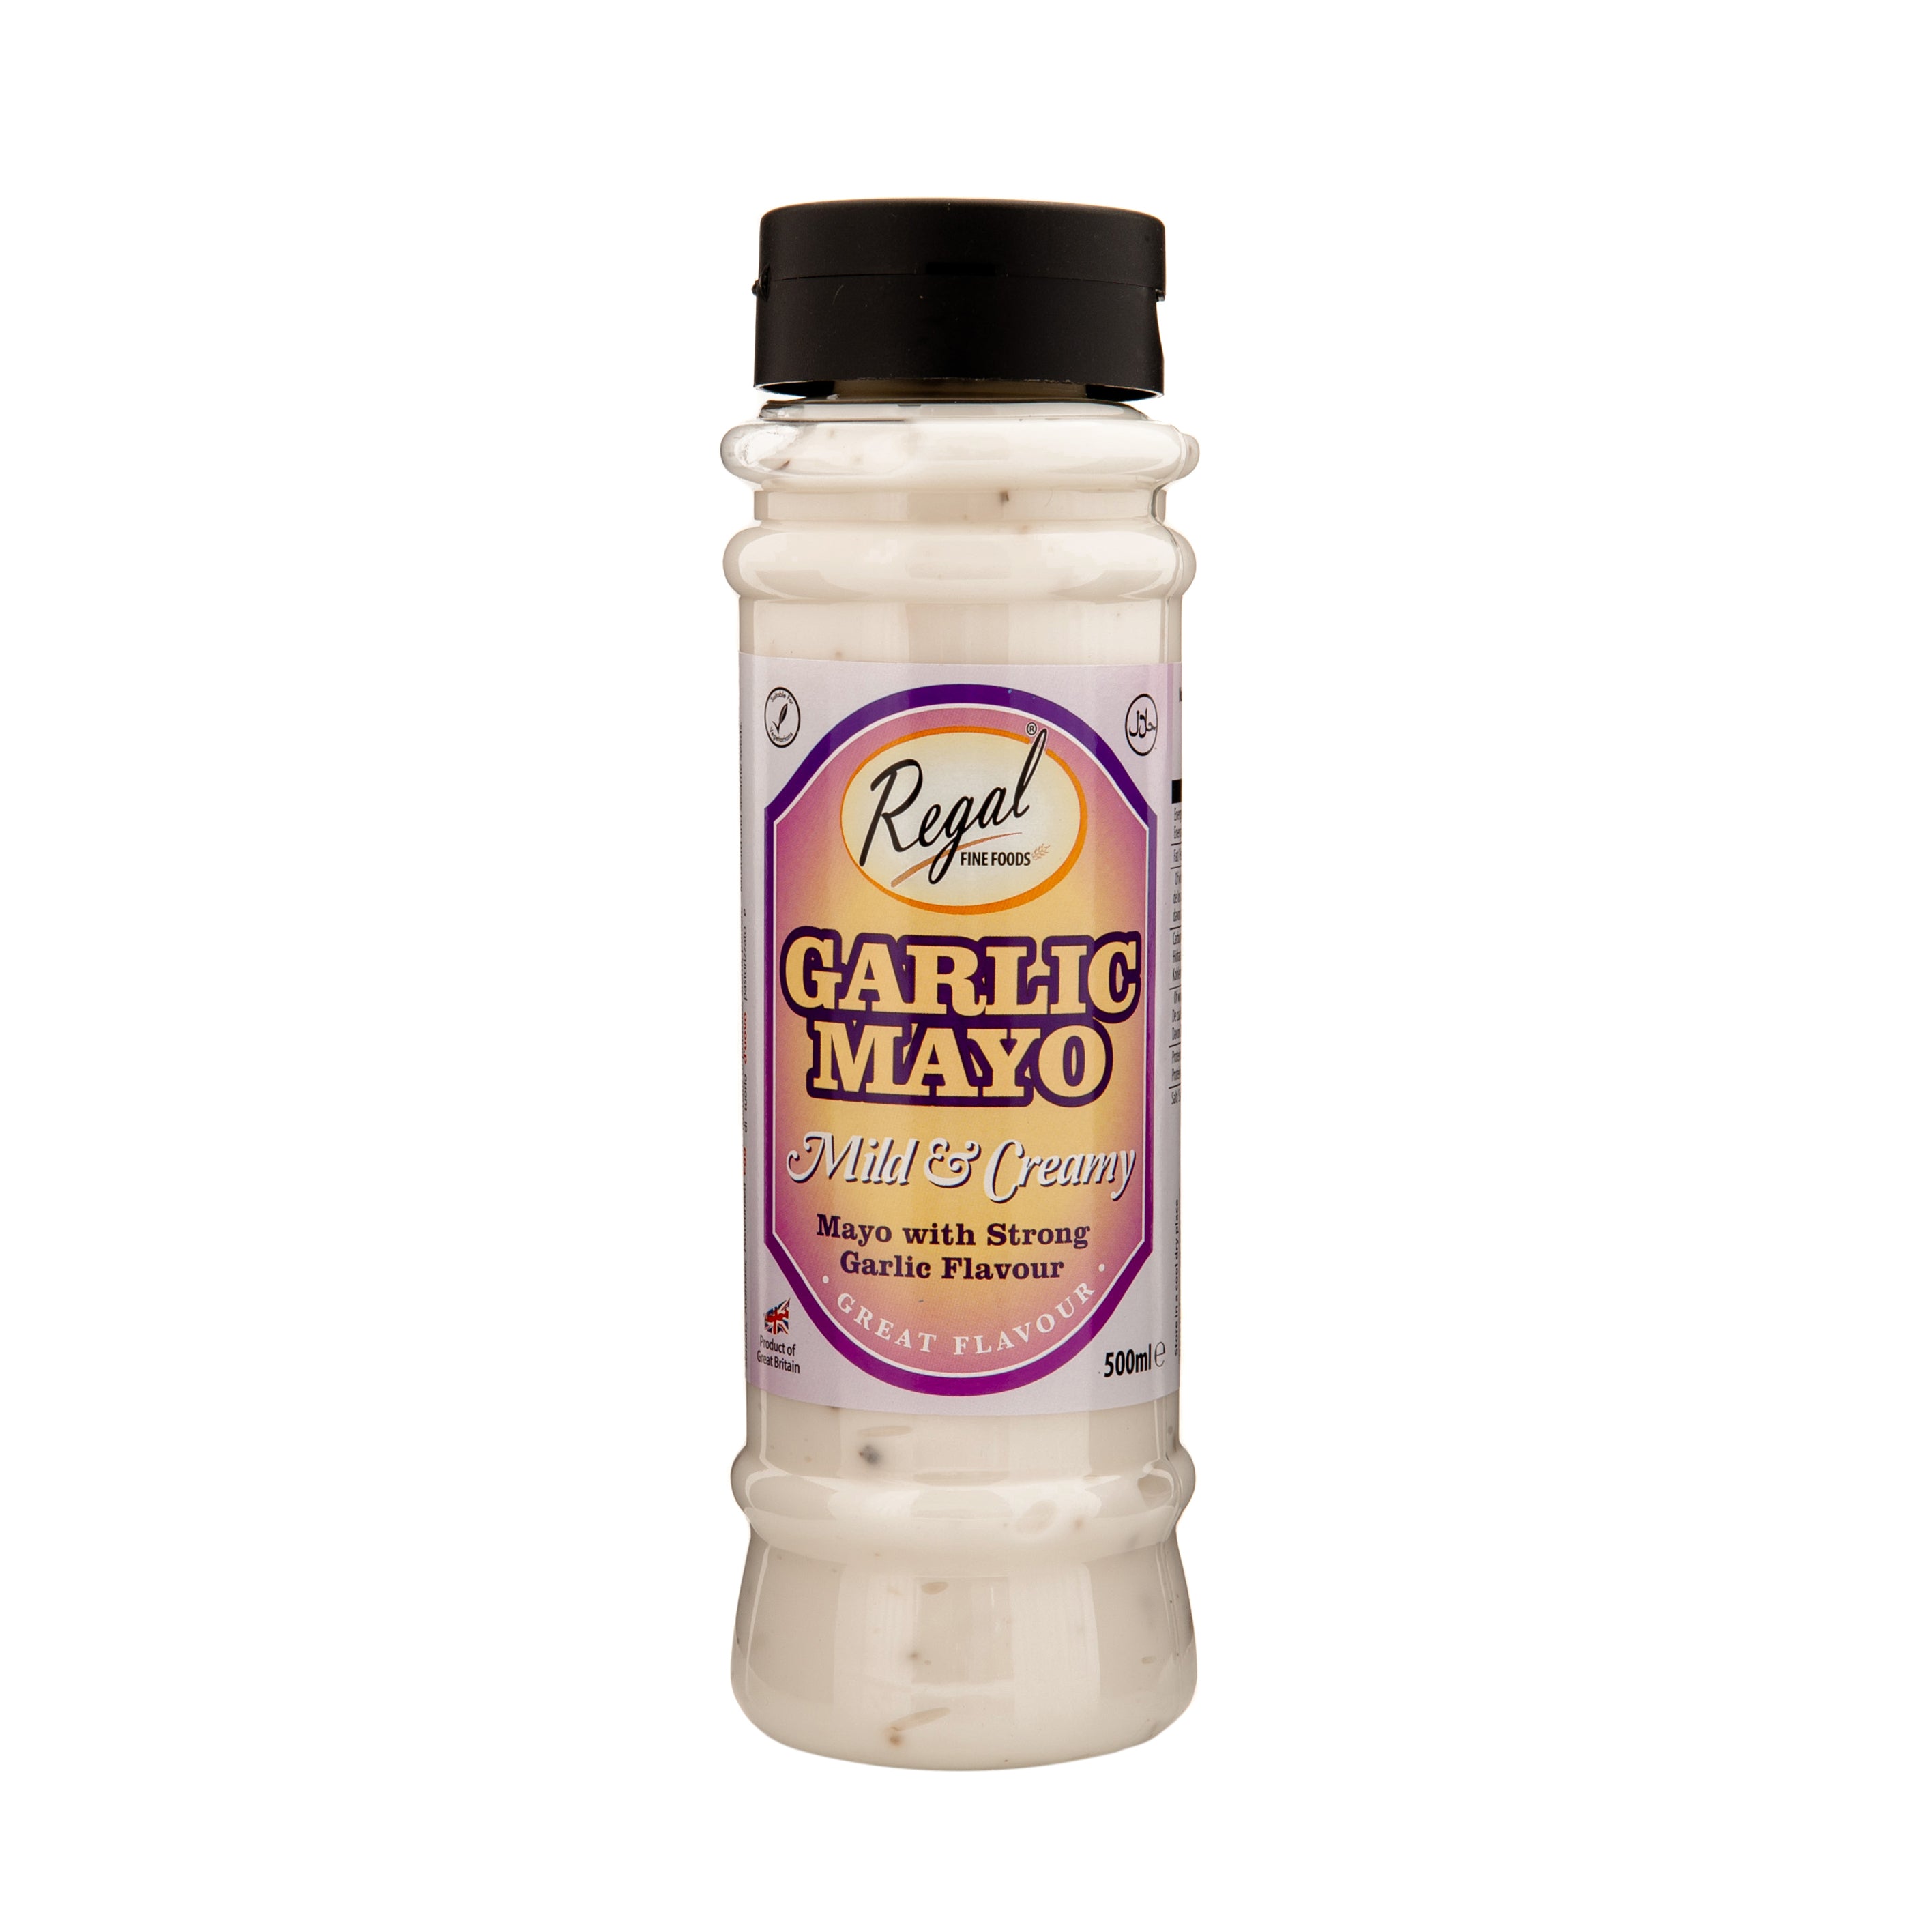 Regal Garlic Mayo Sauce - SaveCo Cash & Carry